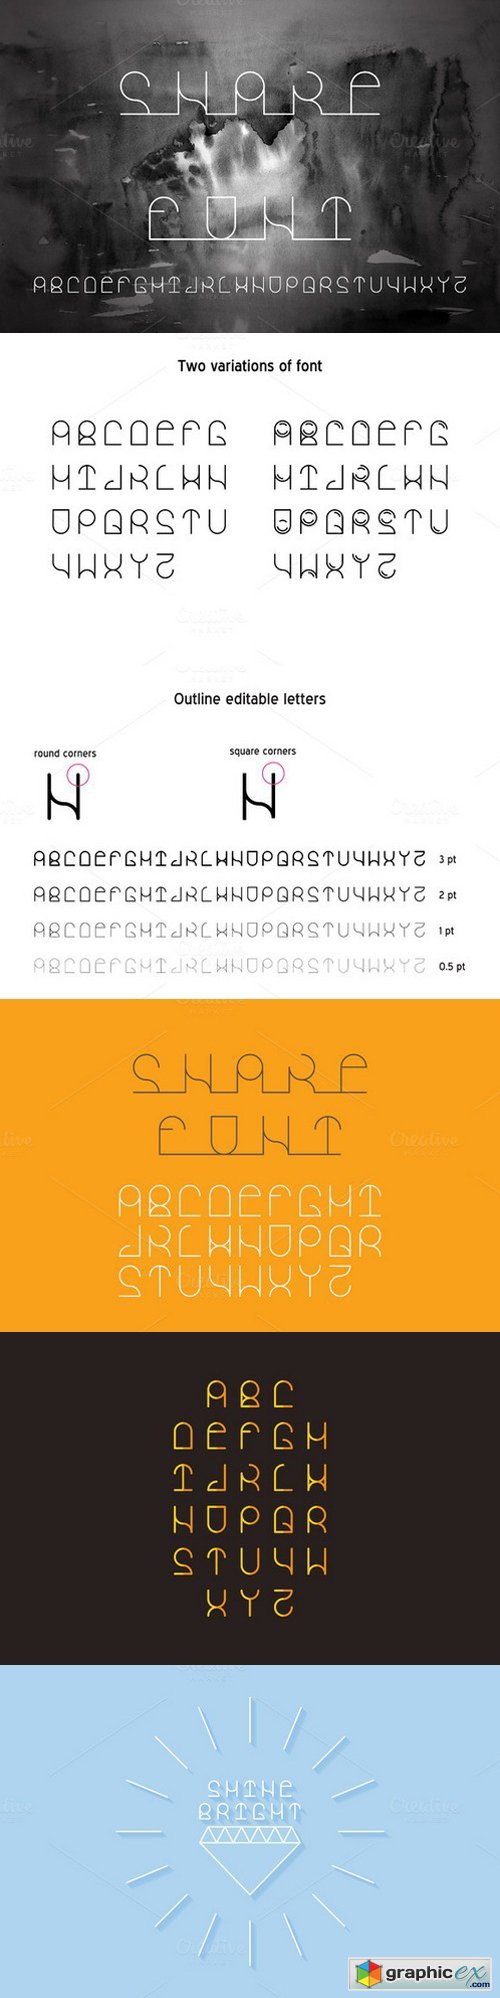 Snake vector linear font